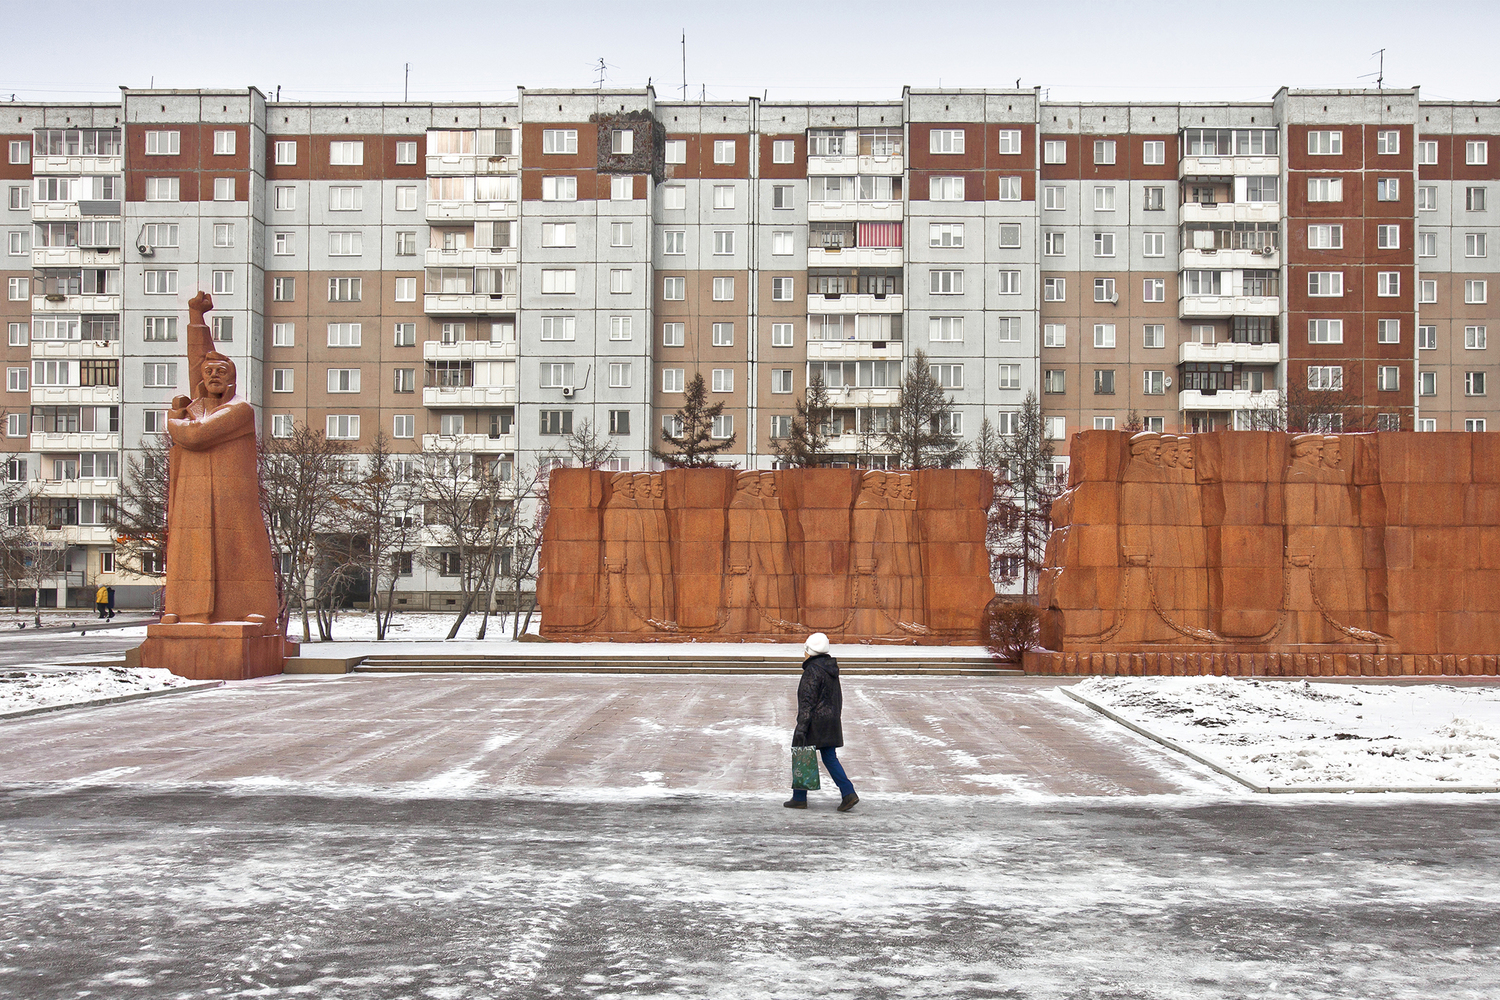 Мемориальный комплекс "Сибирский путь каторжников" в Красноярске (построен в 1978 г.). Изображение © Zupagrafika